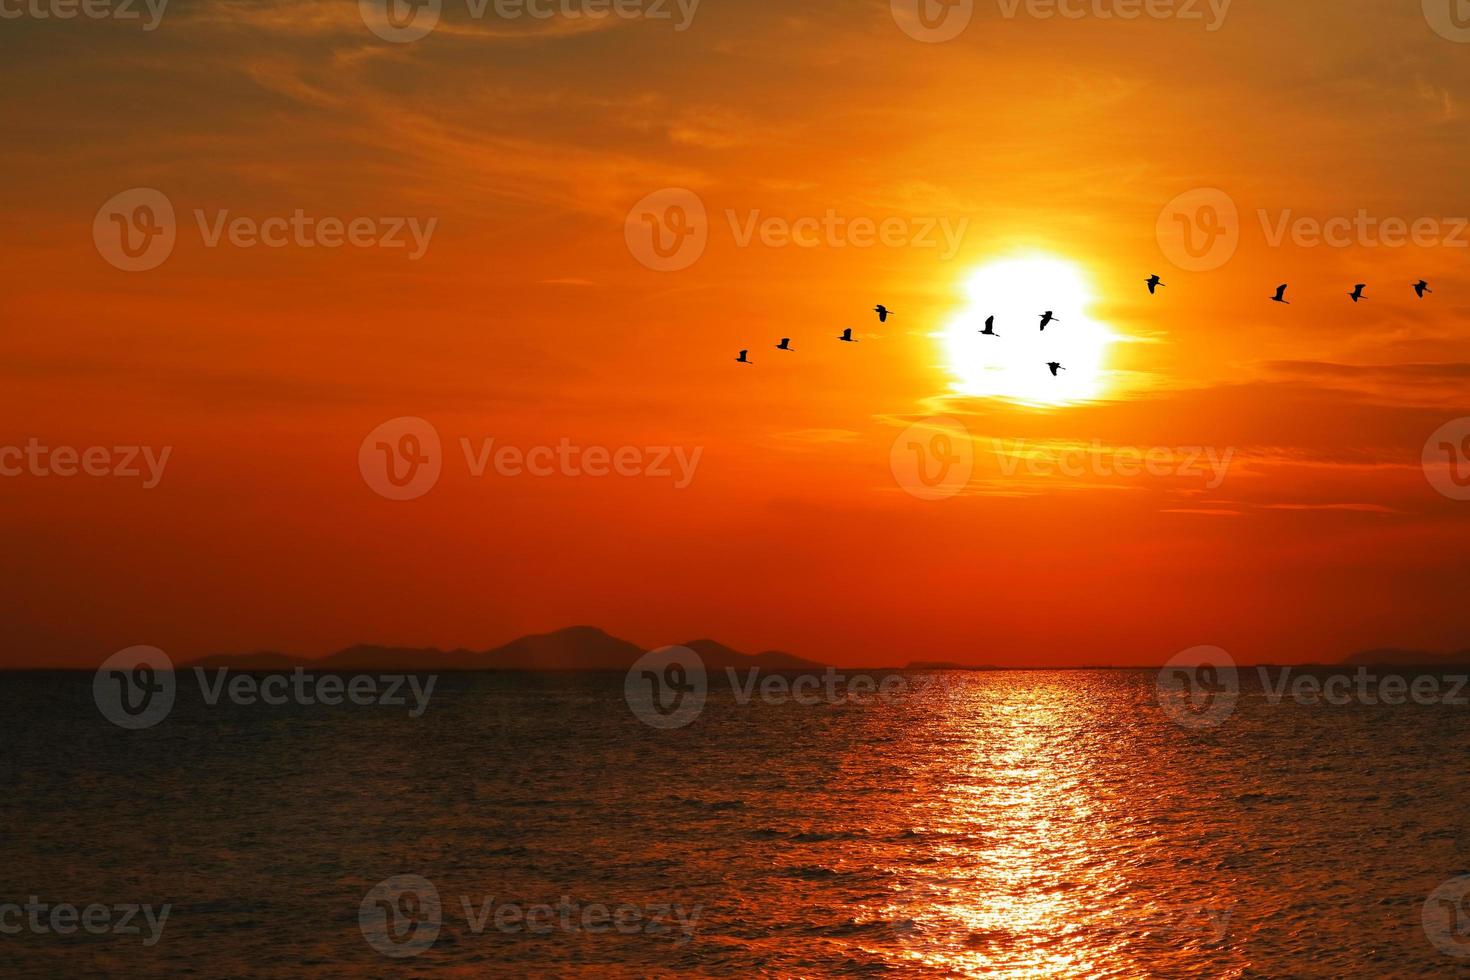 puesta de sol de nuevo en silueta nube naranja roja oscura en el cielo y pájaro volando foto